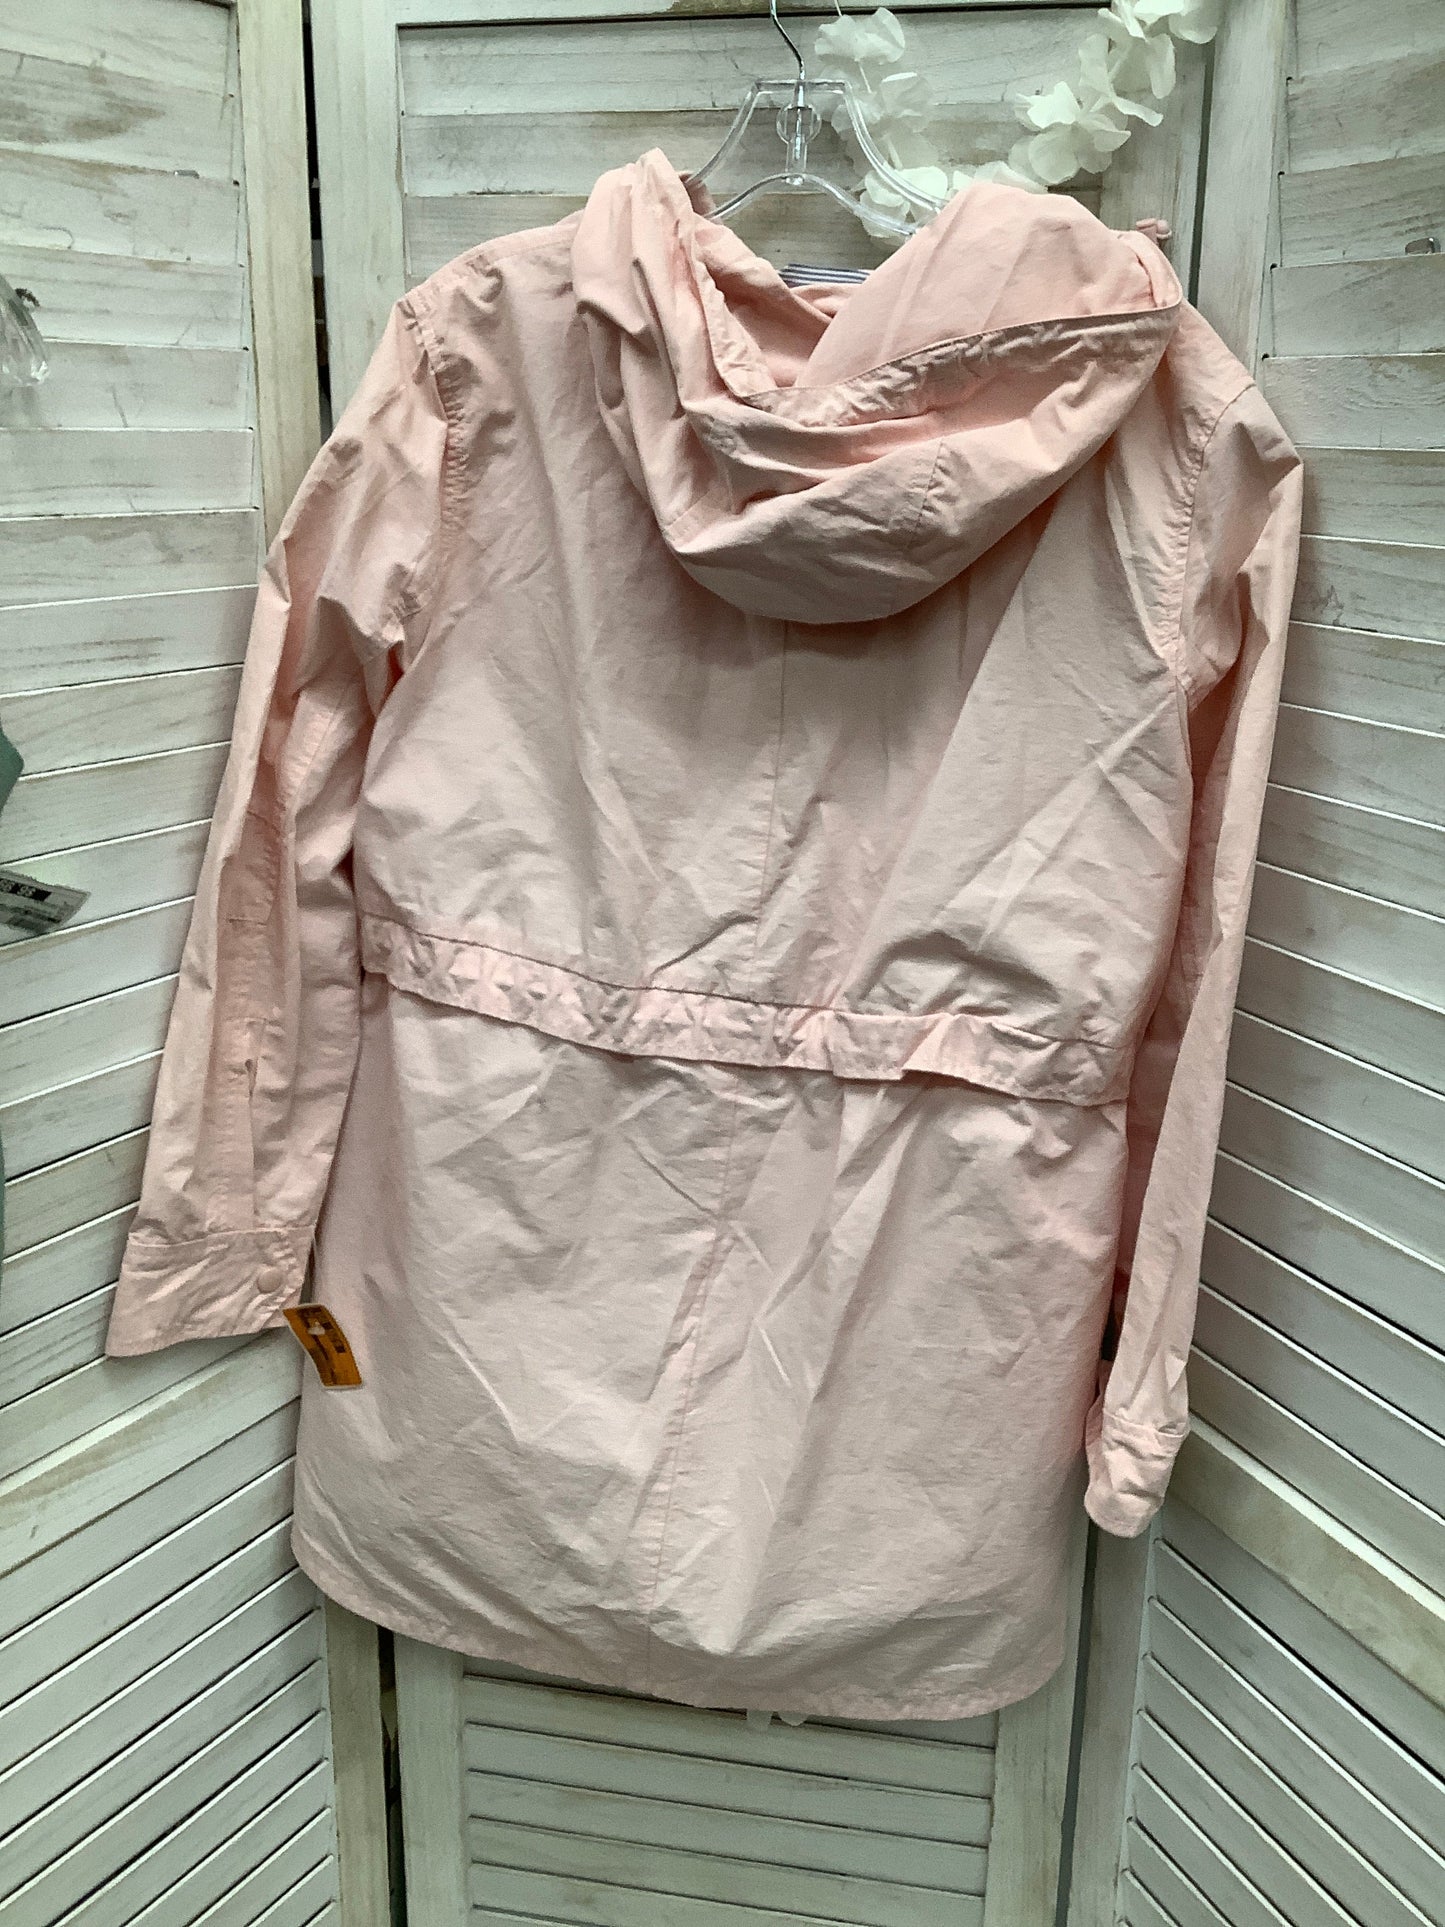 Coat Raincoat By J. Crew  Size: S